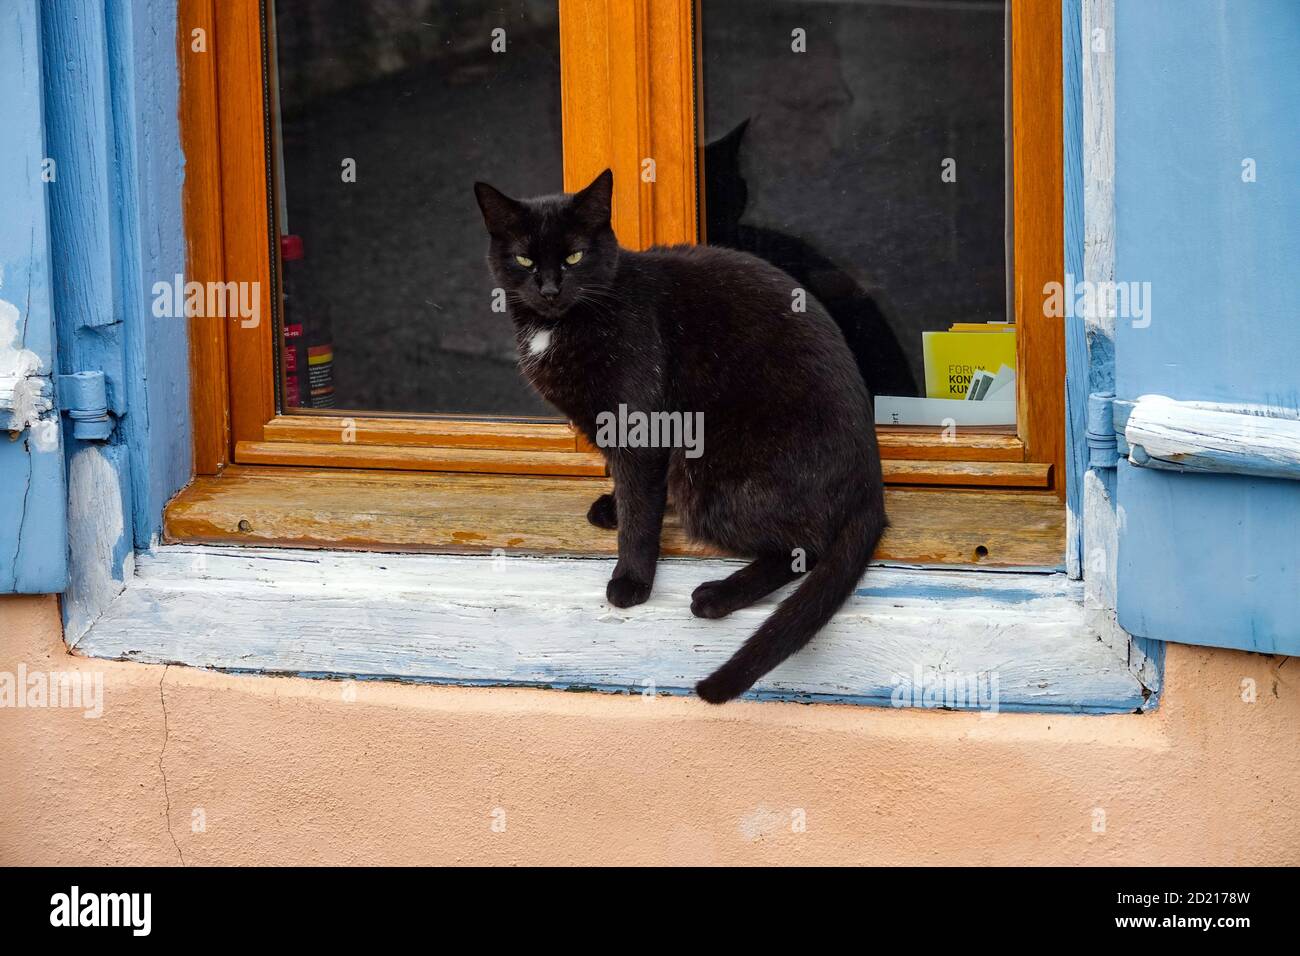 Gatto nero con bib bianco seduto su una sporgenza della finestra, guardando la macchina fotografica Foto Stock